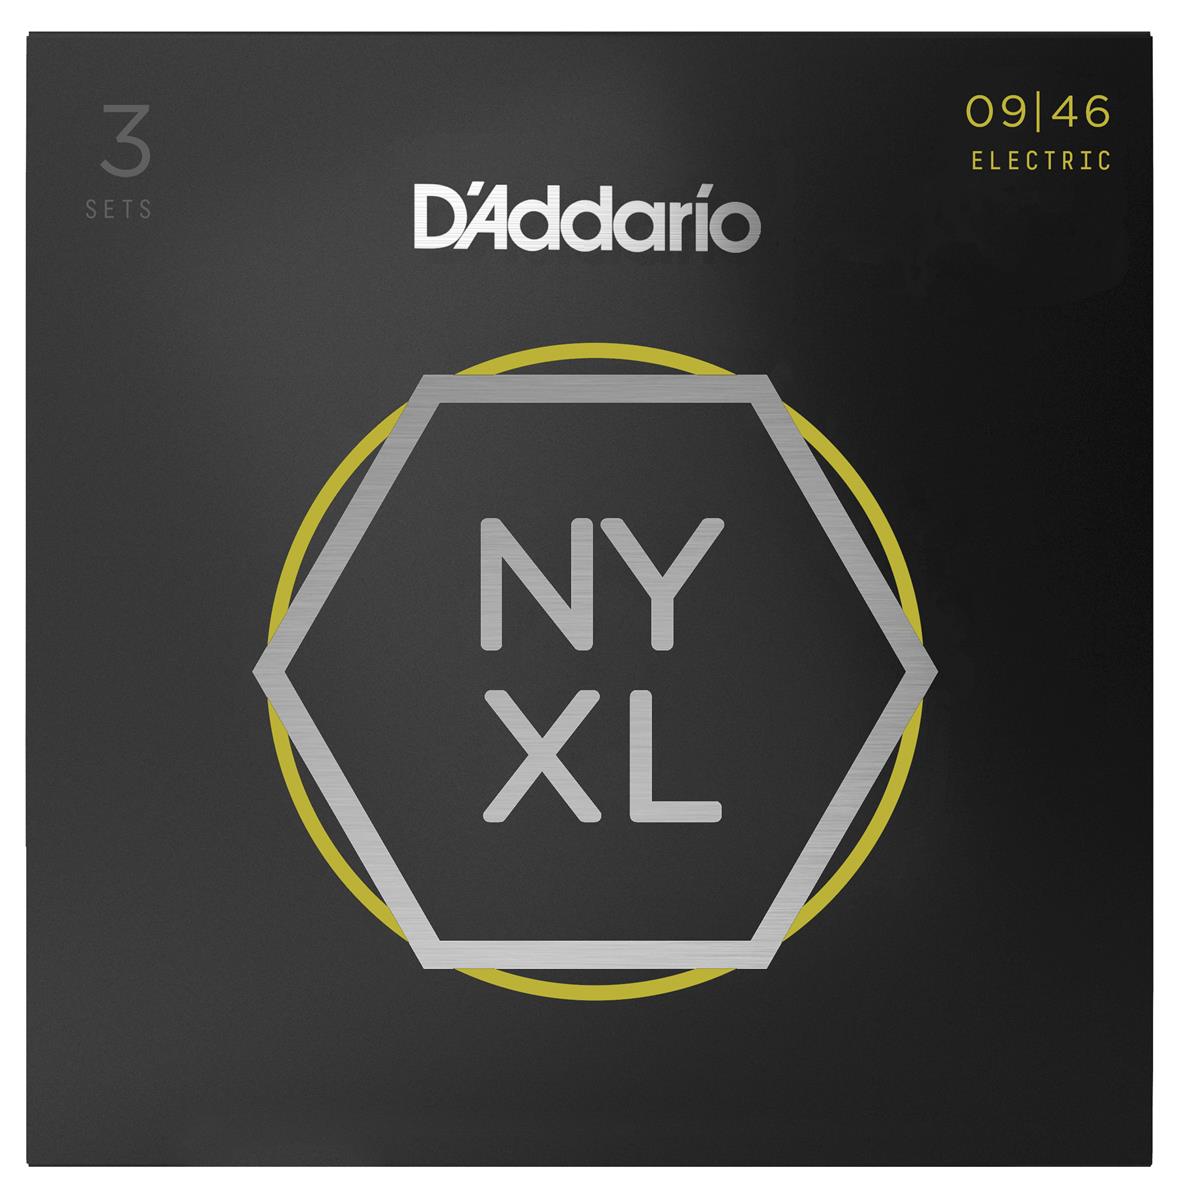 DAddario NYXL0946-3P Electric Guitar Strings 3PK -  D'Addario